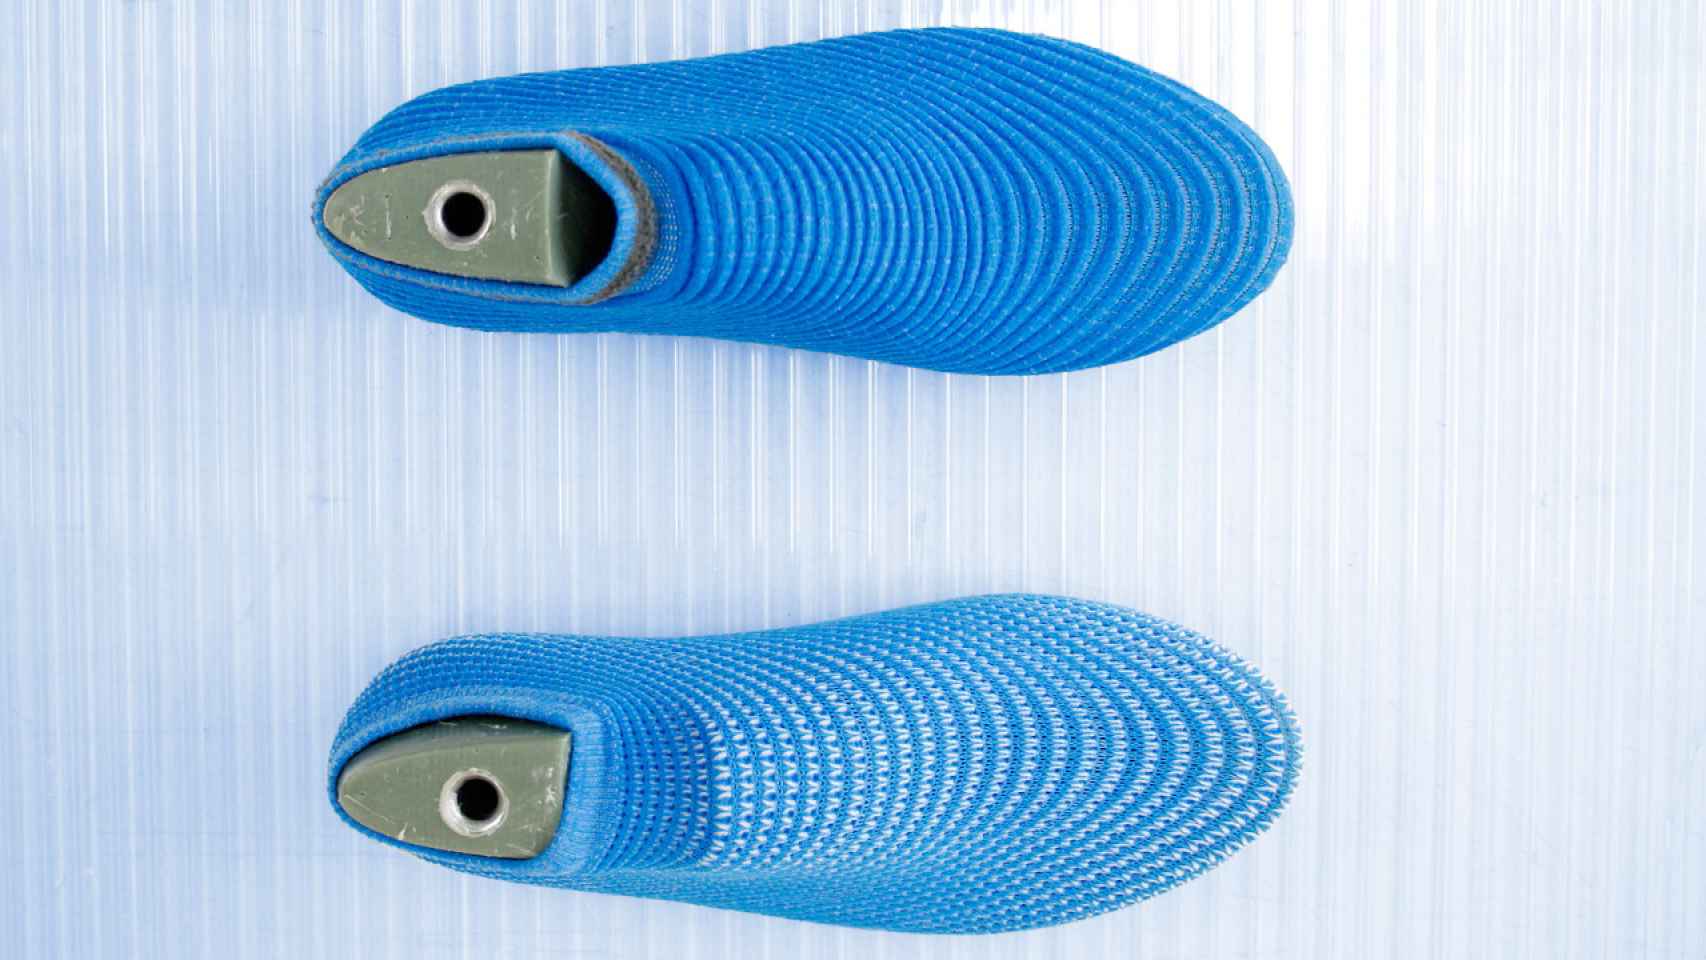 Zapatillas tejidas con técnica circular